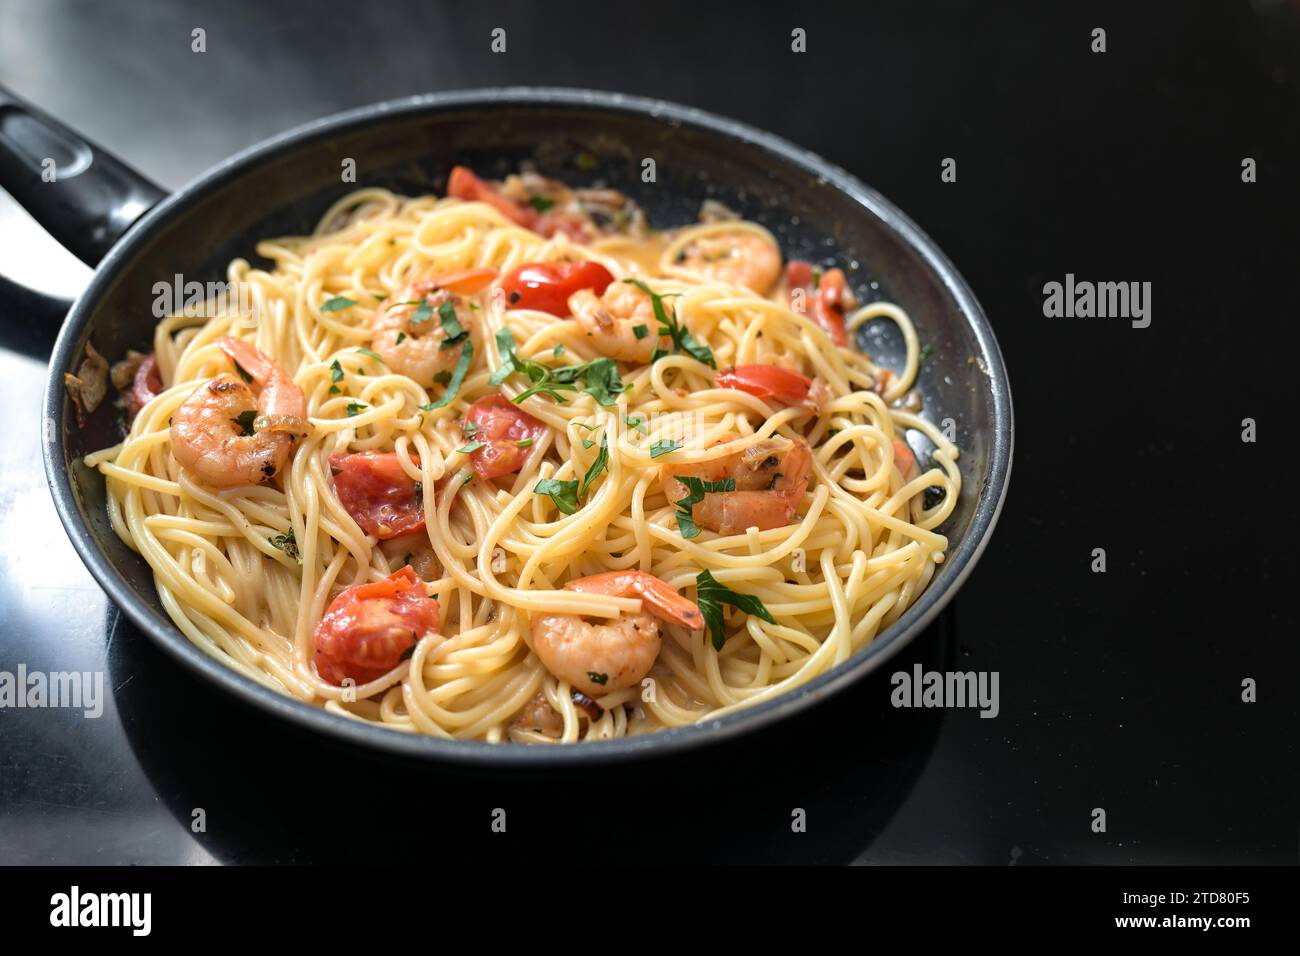 Spaghetti aux crevettes, tomates et herbes une poêle noire sur le dessus de la cuisinière, la cuisson d'un repas de fruits de mer méditerranéen, espace de copie, foyer sélectionné, narr Banque D'Images